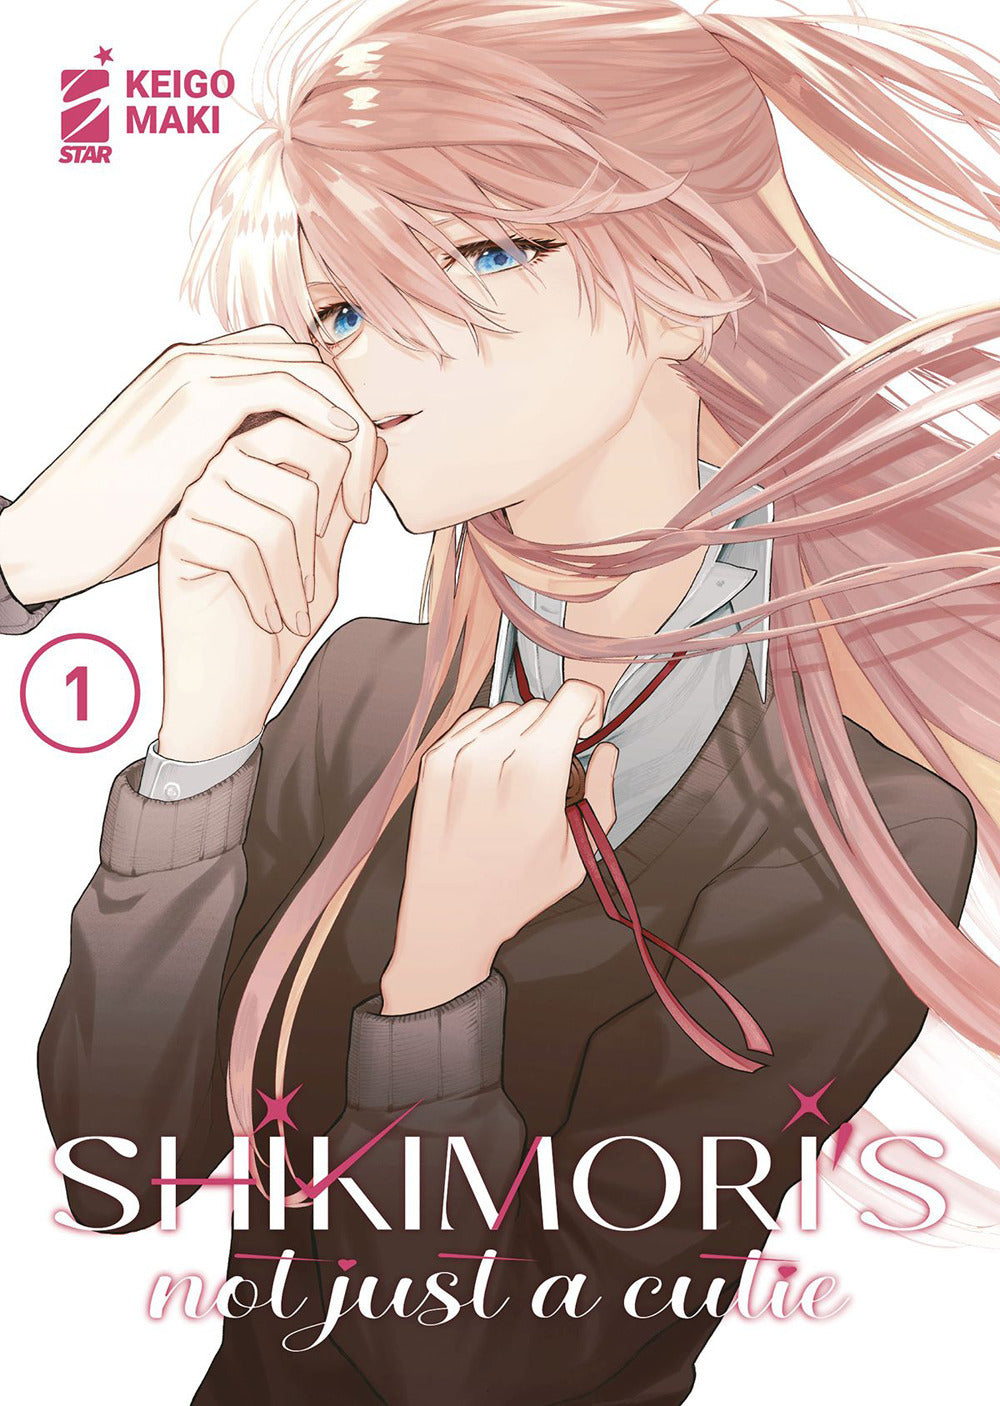 Shikimori's not just a cutie. Vol. 1